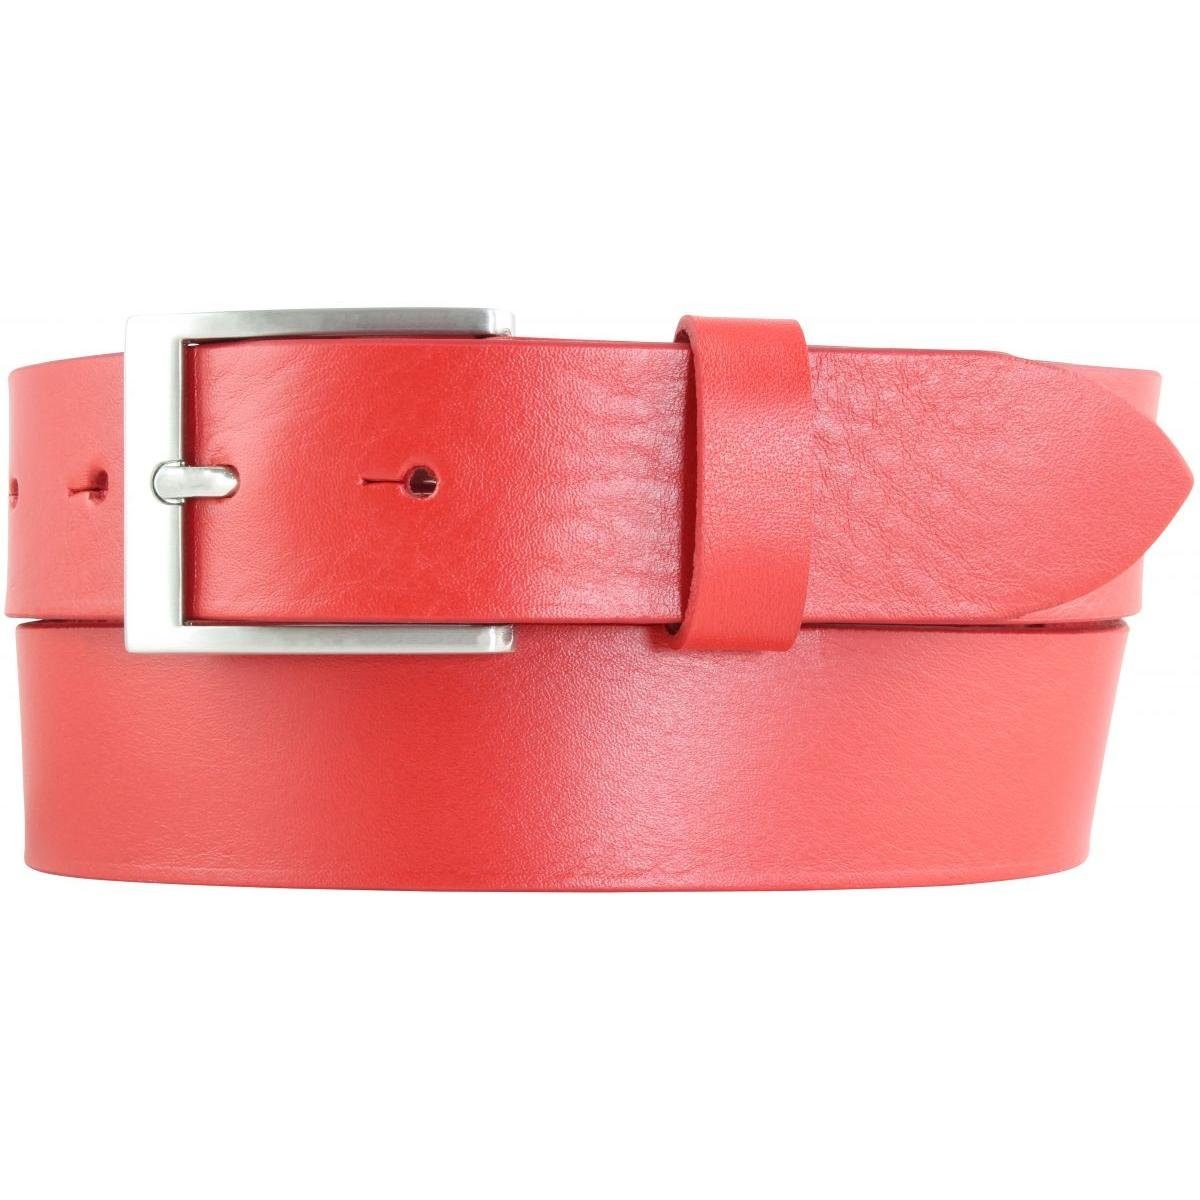 BELTINGER Ledergürtel Gürtel aus Vollrindleder 3,5 cm - Jeans-Gürtel für Damen Herren 35mm - Rot, Silber